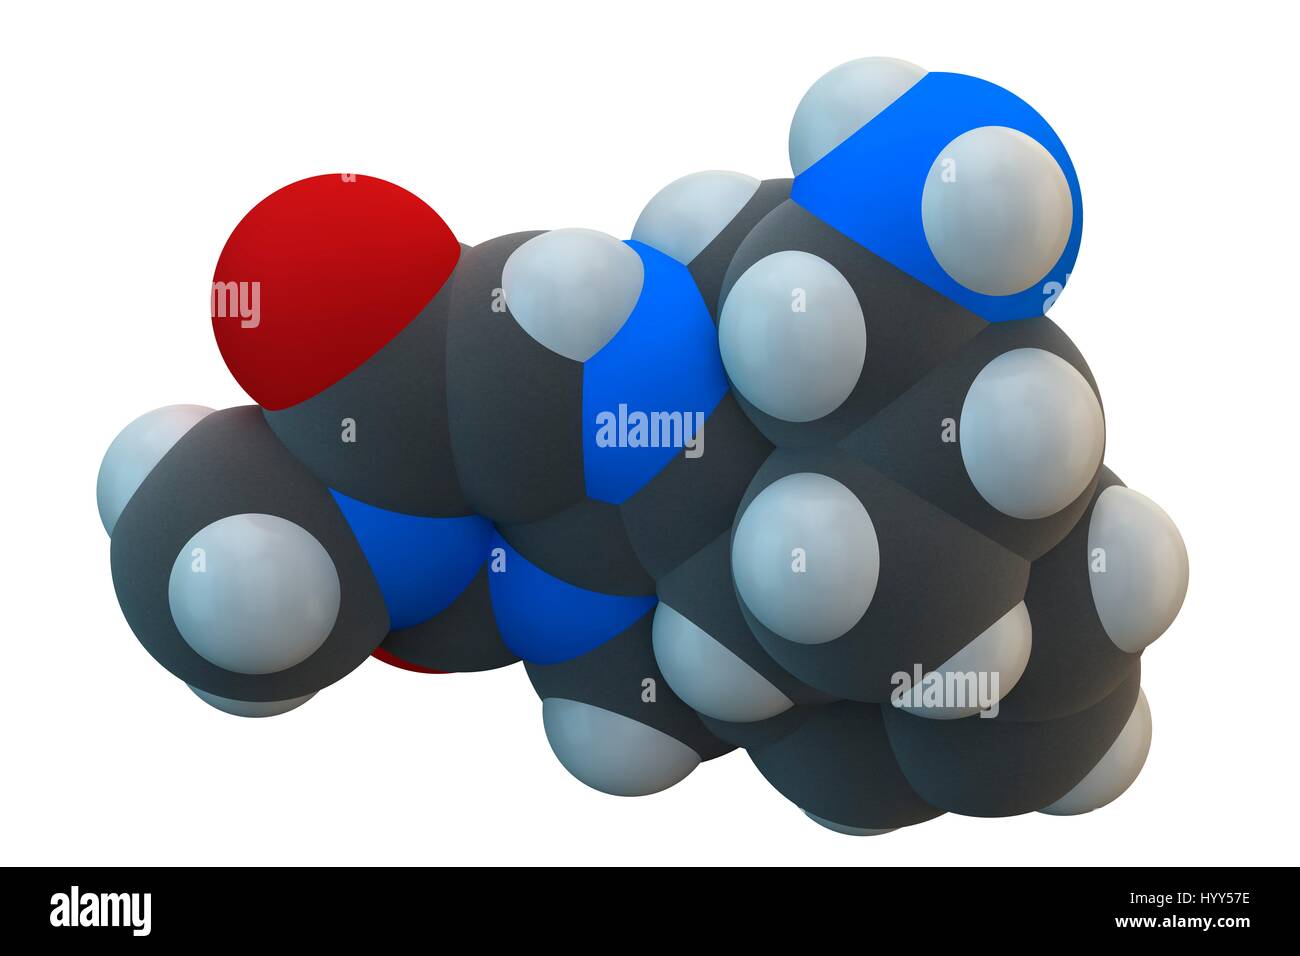 Diabete Alogliptin molecola di farmaco. Appartiene al dipeptidil peptidasi 4 (DPP-4), o gliptin, classe di medicamenti antidiabetici. Formula chimica è C18H21N5O2. Gli atomi sono rappresentati come sfere: carbonio (grigio), Idrogeno (bianco), Azoto (blu), Ossigeno (rosso). Illustrazione. Foto Stock